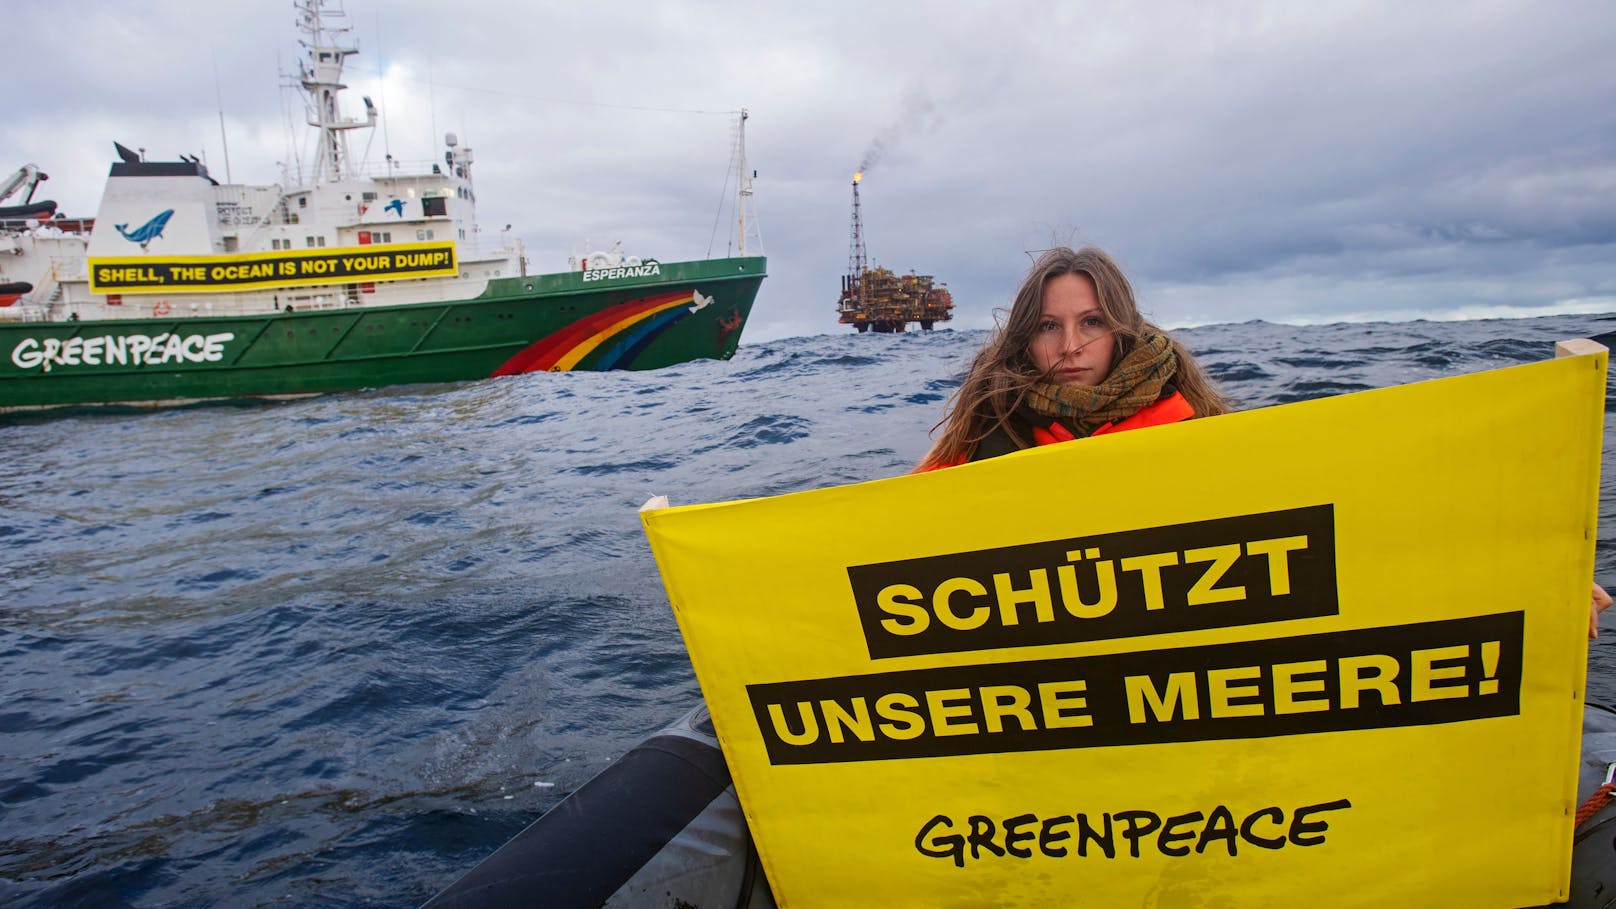 Die Greenpeace-Aktivistin Jennifer Ganster hält ein Banner mit der Aufschrift "Schützt unsere Meere" bei einer Demonstration gegen Shell im Brent-Feld. Das Greenpeace-Schiff Esperanza fährt vor der von Shell betriebenen Ölplattform Brent-C (Charlie) im Hintergrund vorbei. Die Anlage befindet sich im Ölfeld Brent im britischen Teil der Nordsee.